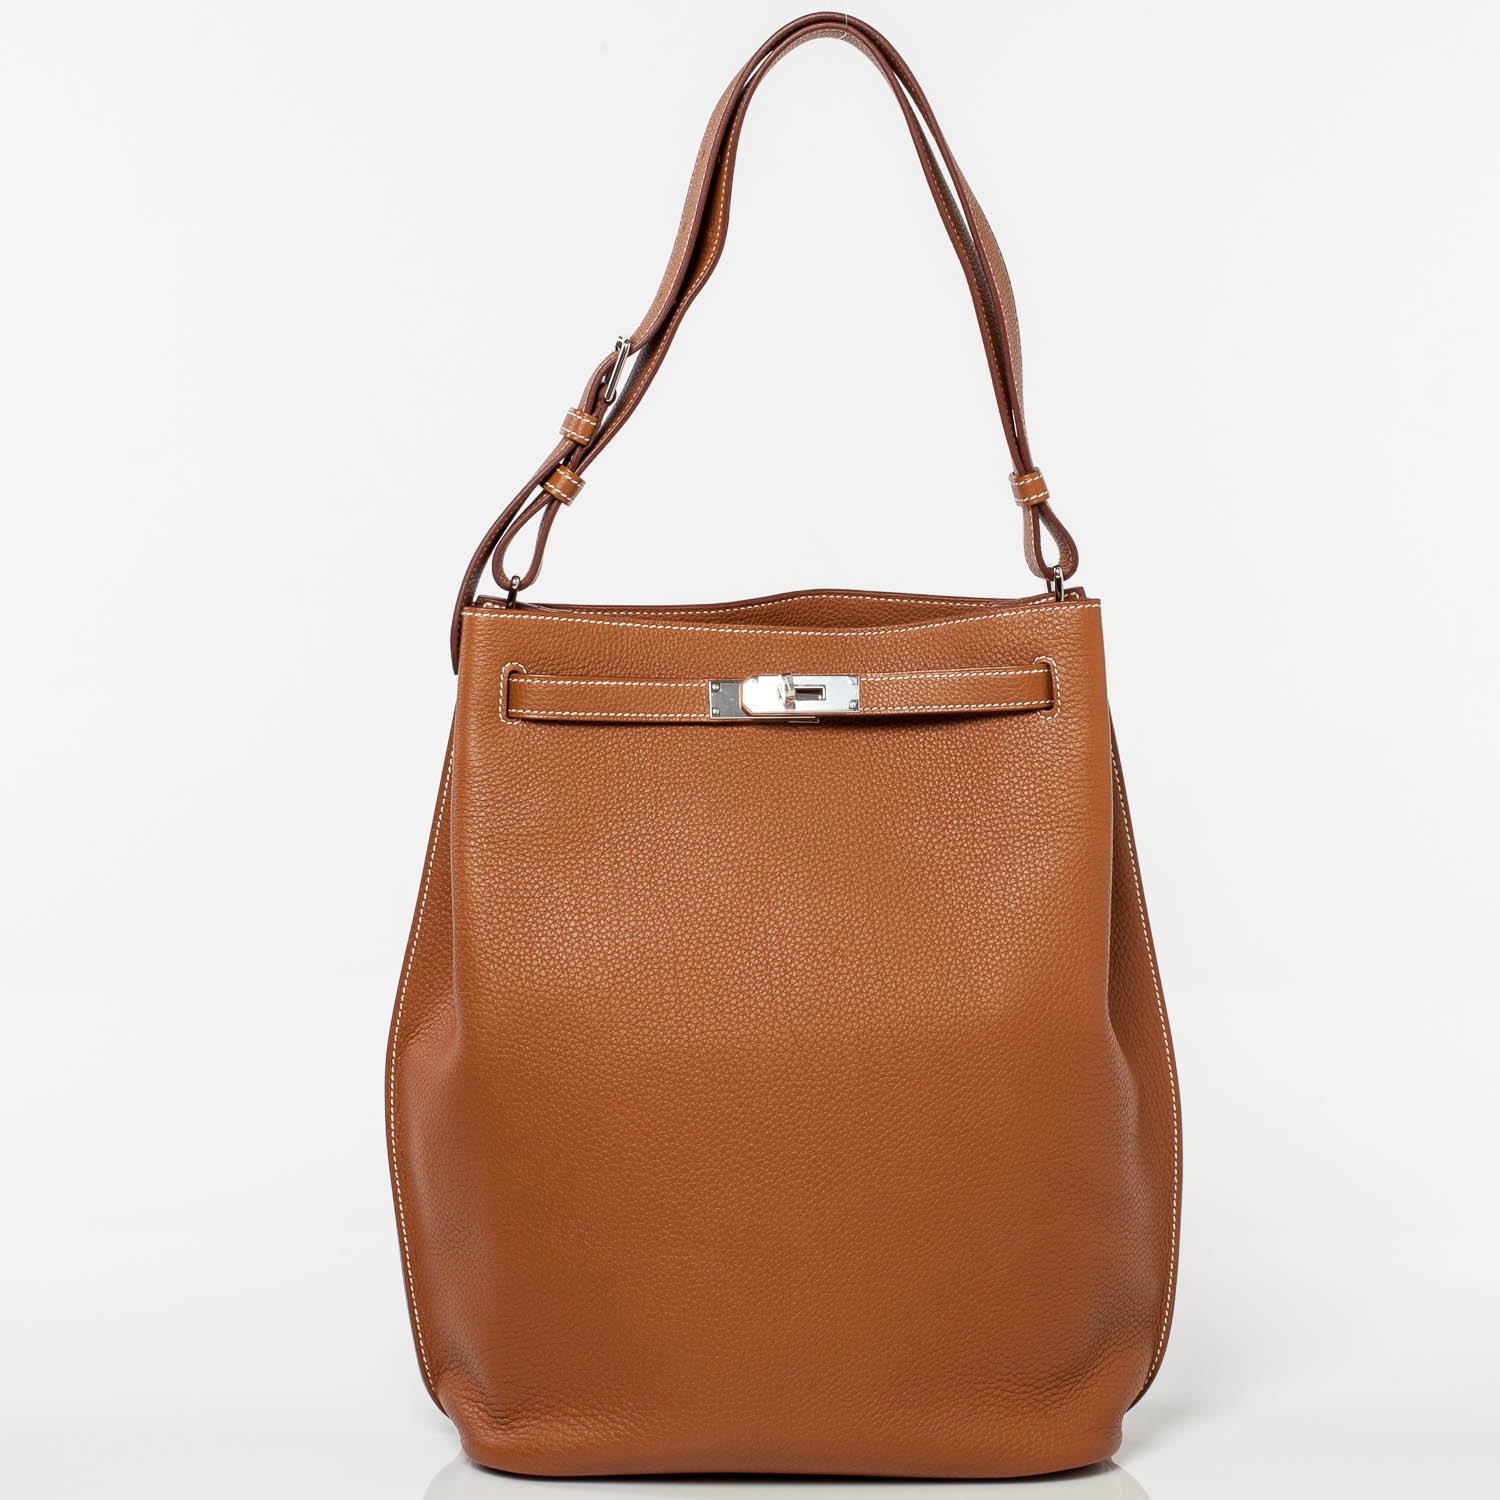 Hermès So Kelly Bag in Tan Leather.jpg